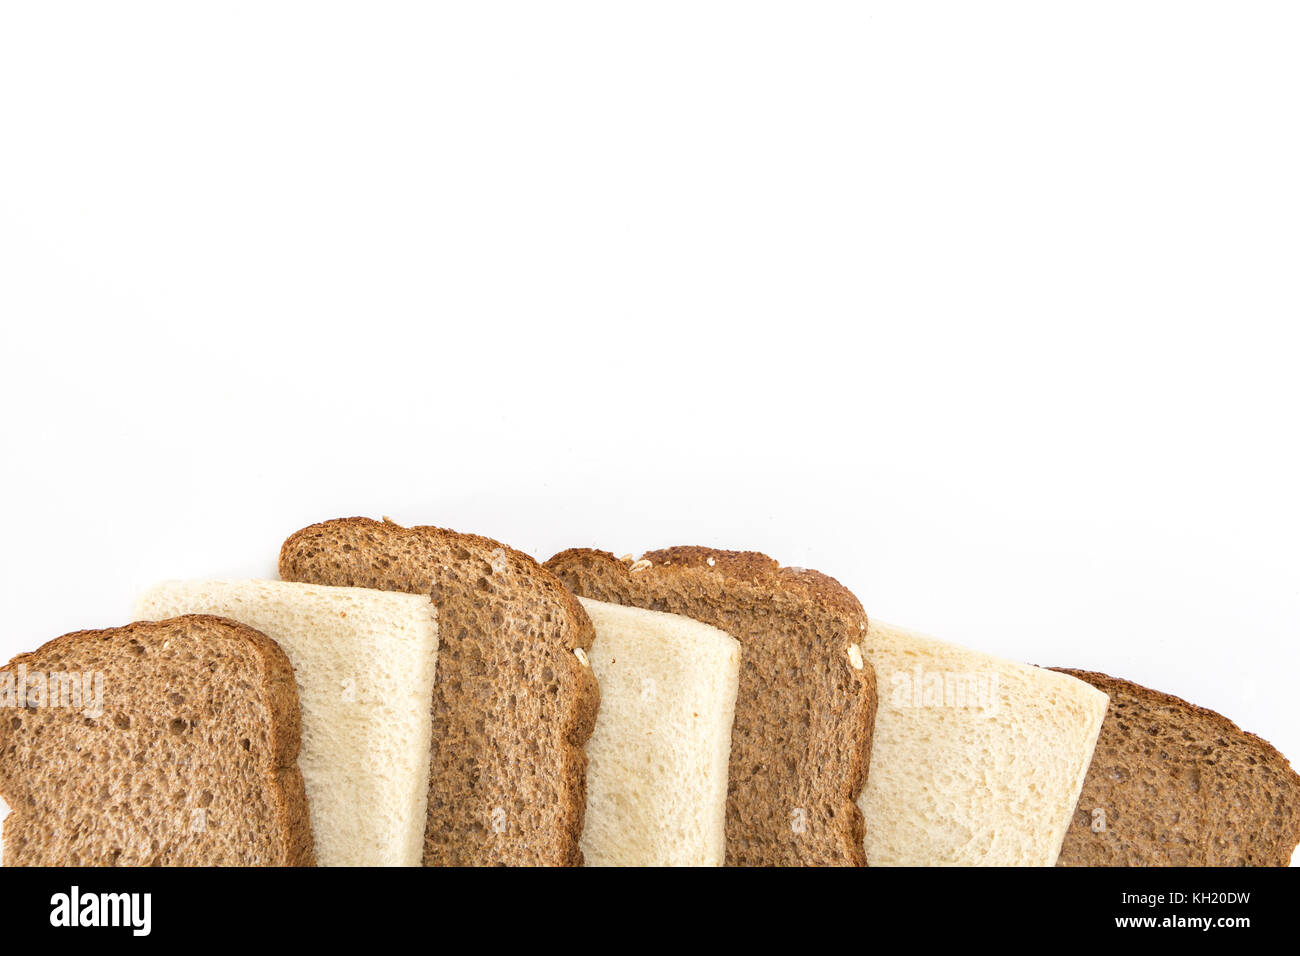 Les tranches de pain dans une rangée, sur fond blanc. Banque D'Images